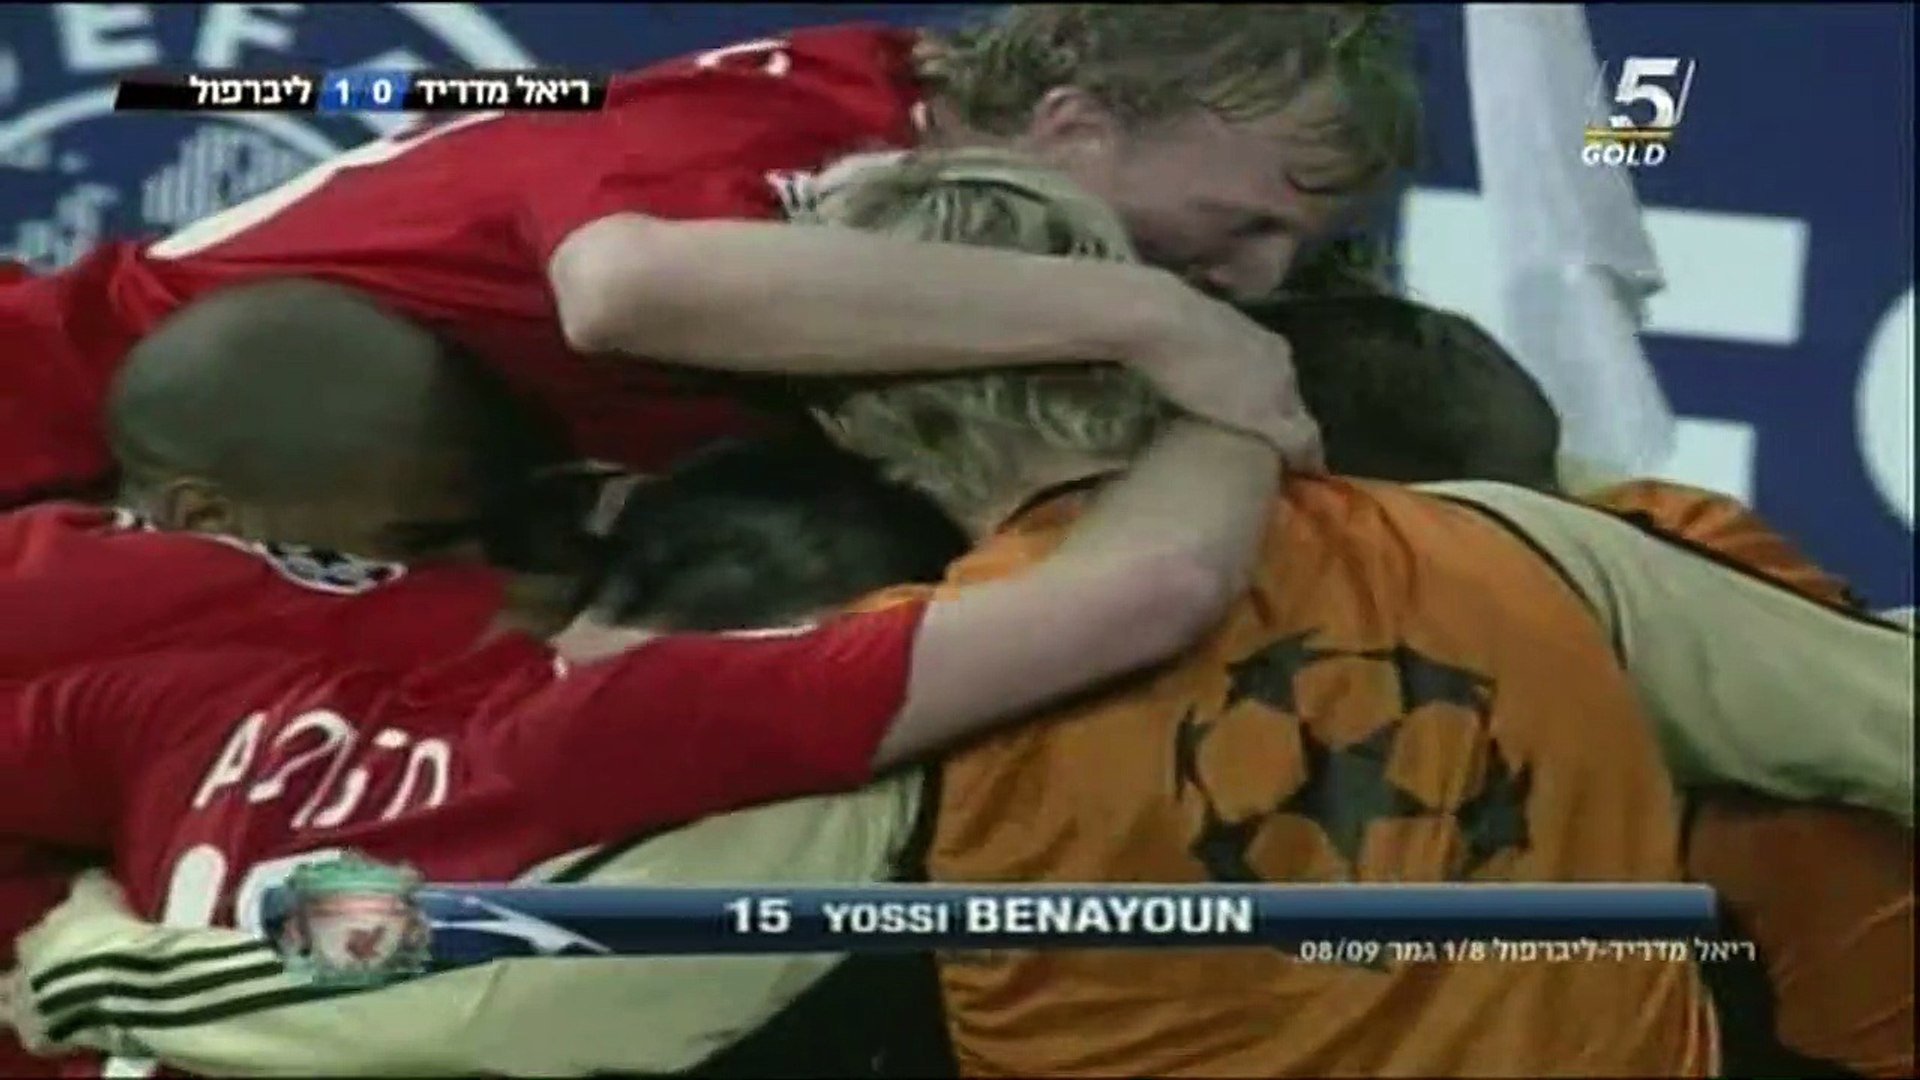 יוסי בניון נגד ריאל מדריד ליגת האלופות שמינית גמר עונת 2008/2009 - video  Dailymotion